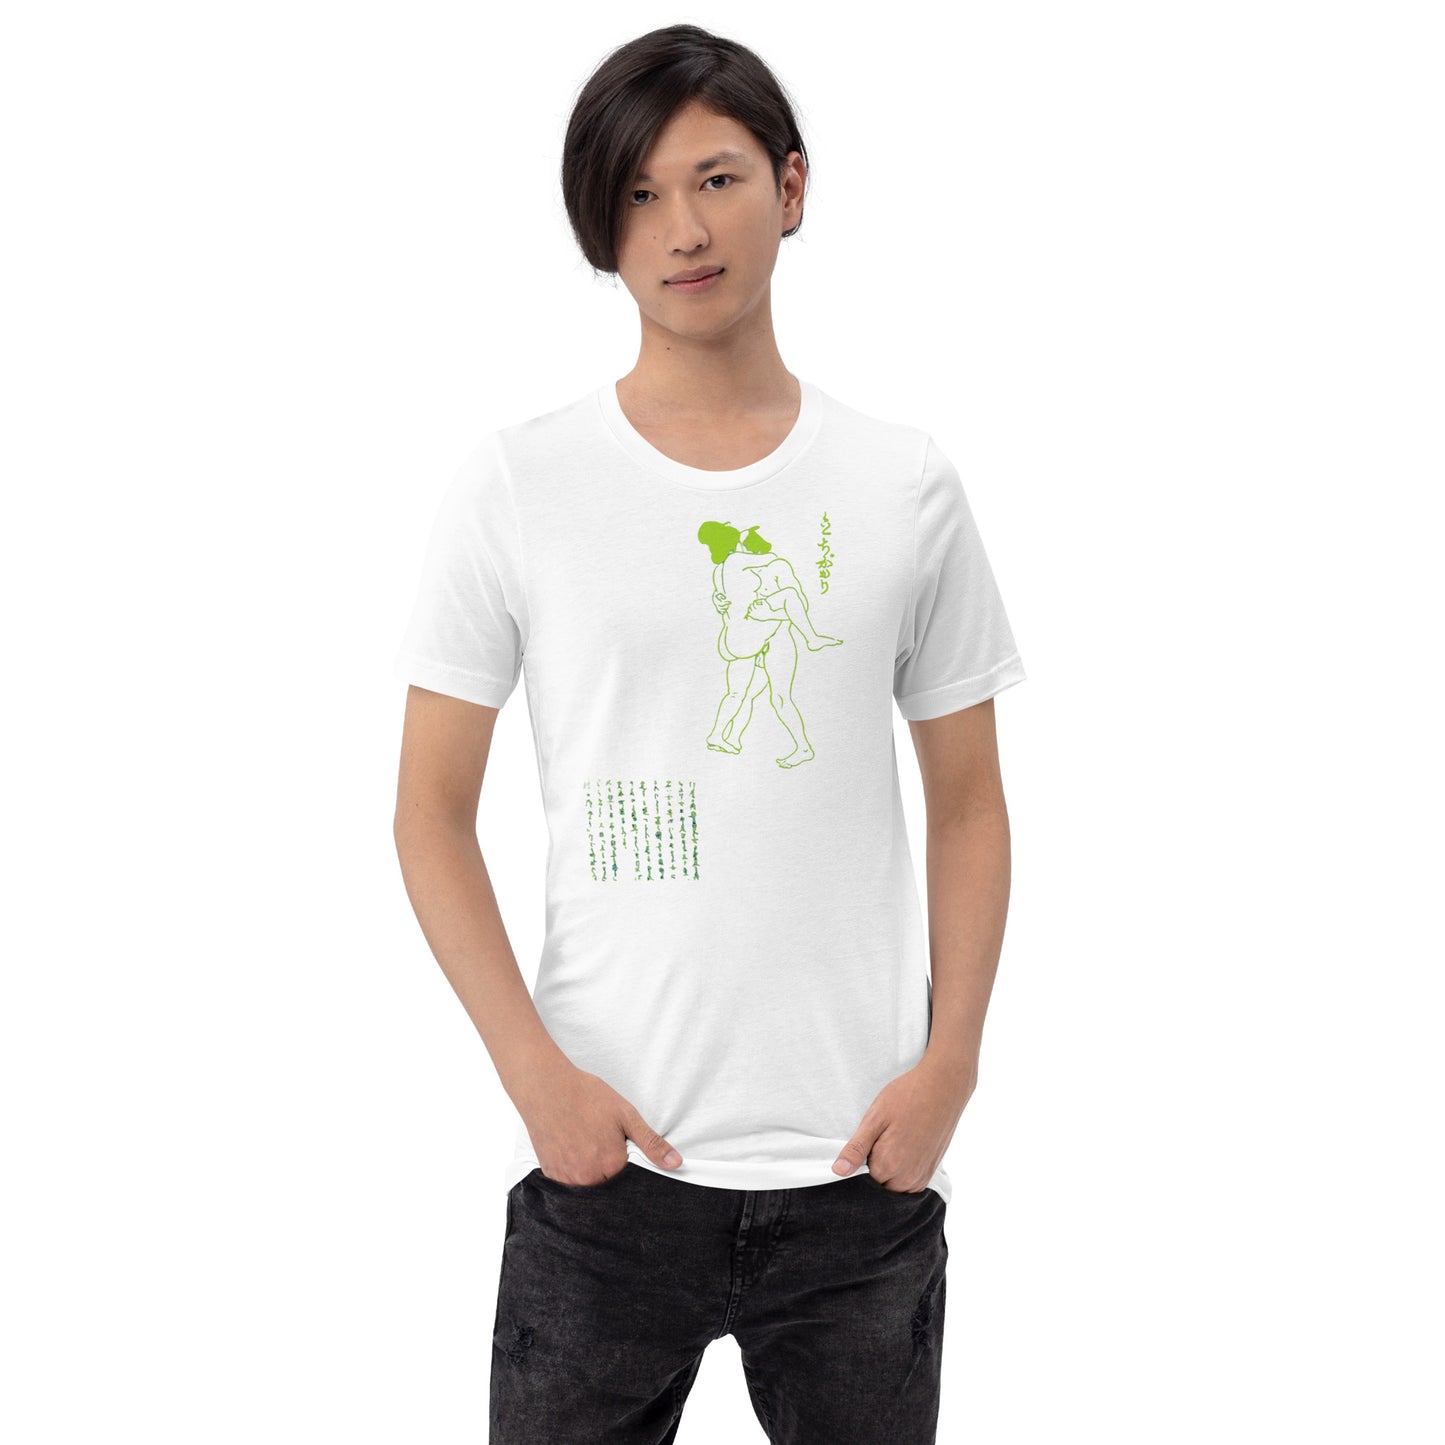 Unisex t-shirt "43 TACHI GAKARI" White